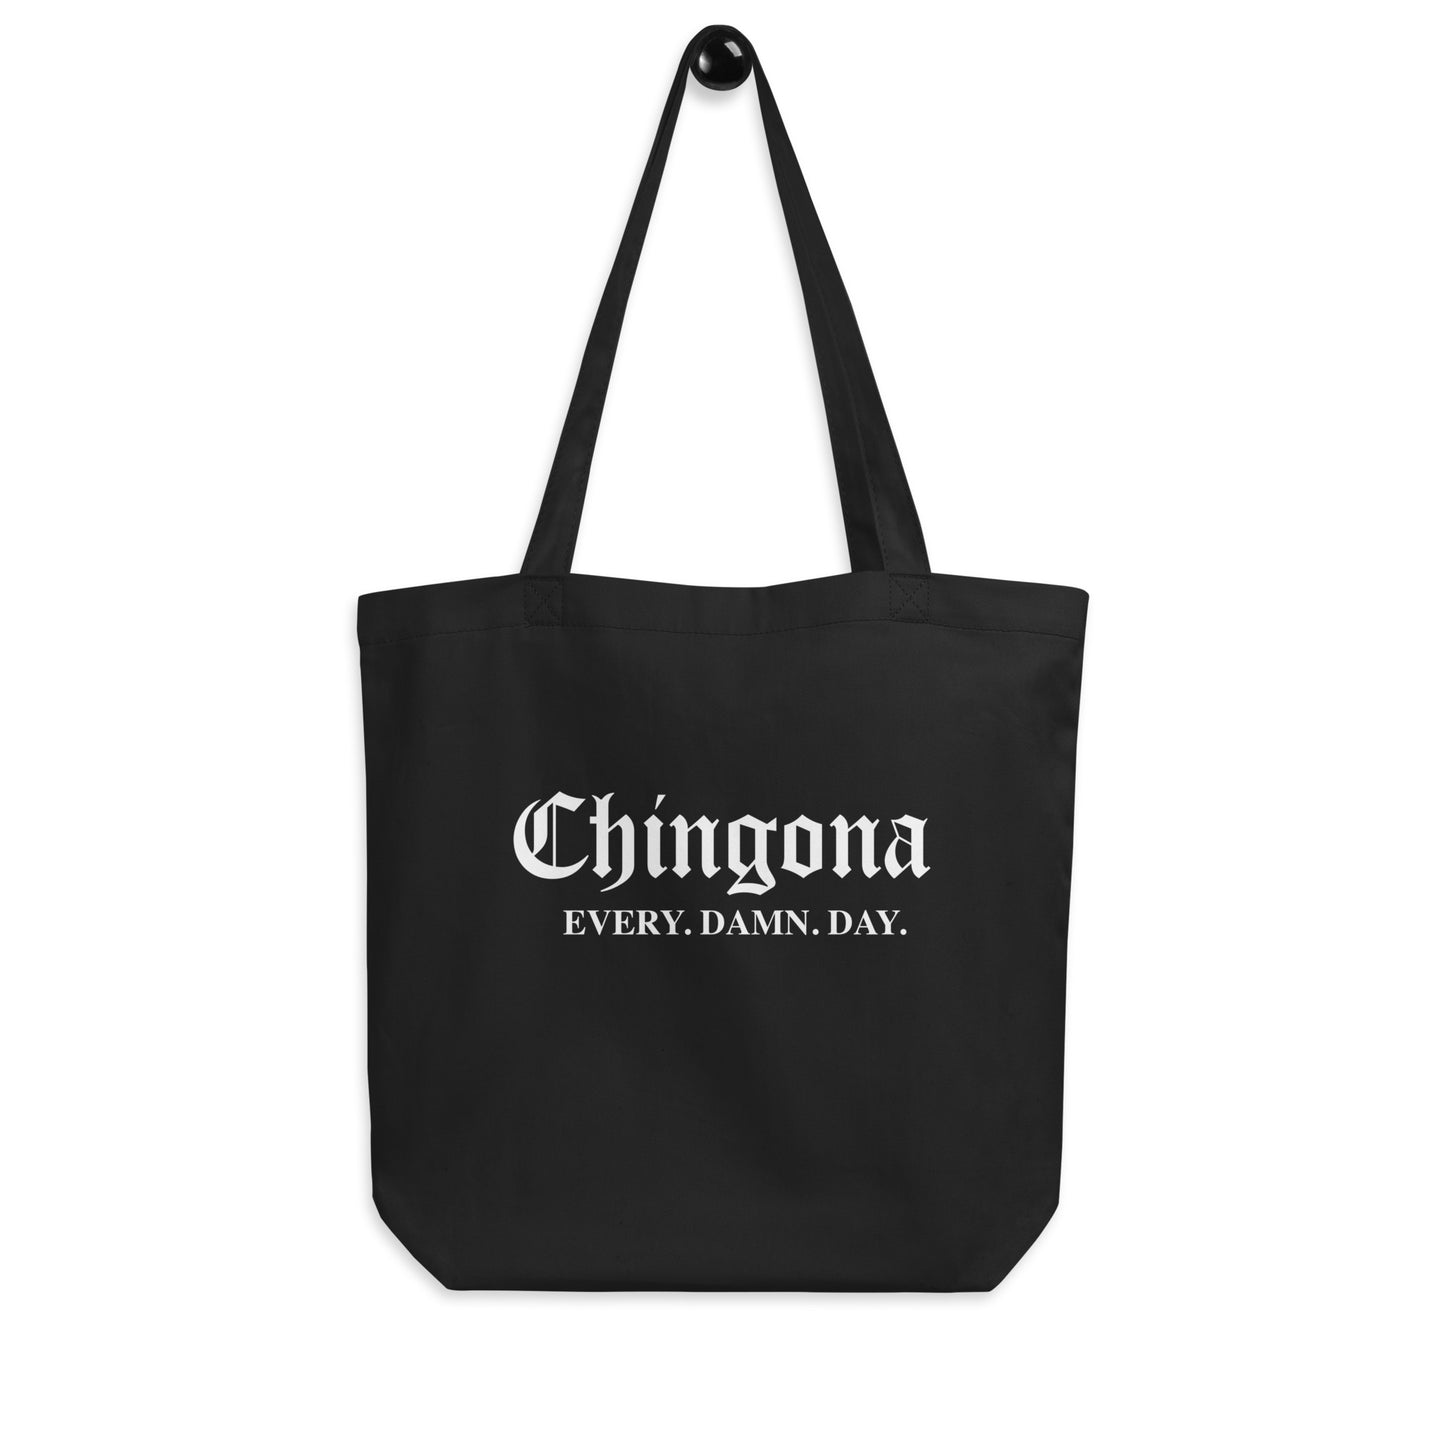 Chingona Every Damn Day Eco Tote Bag